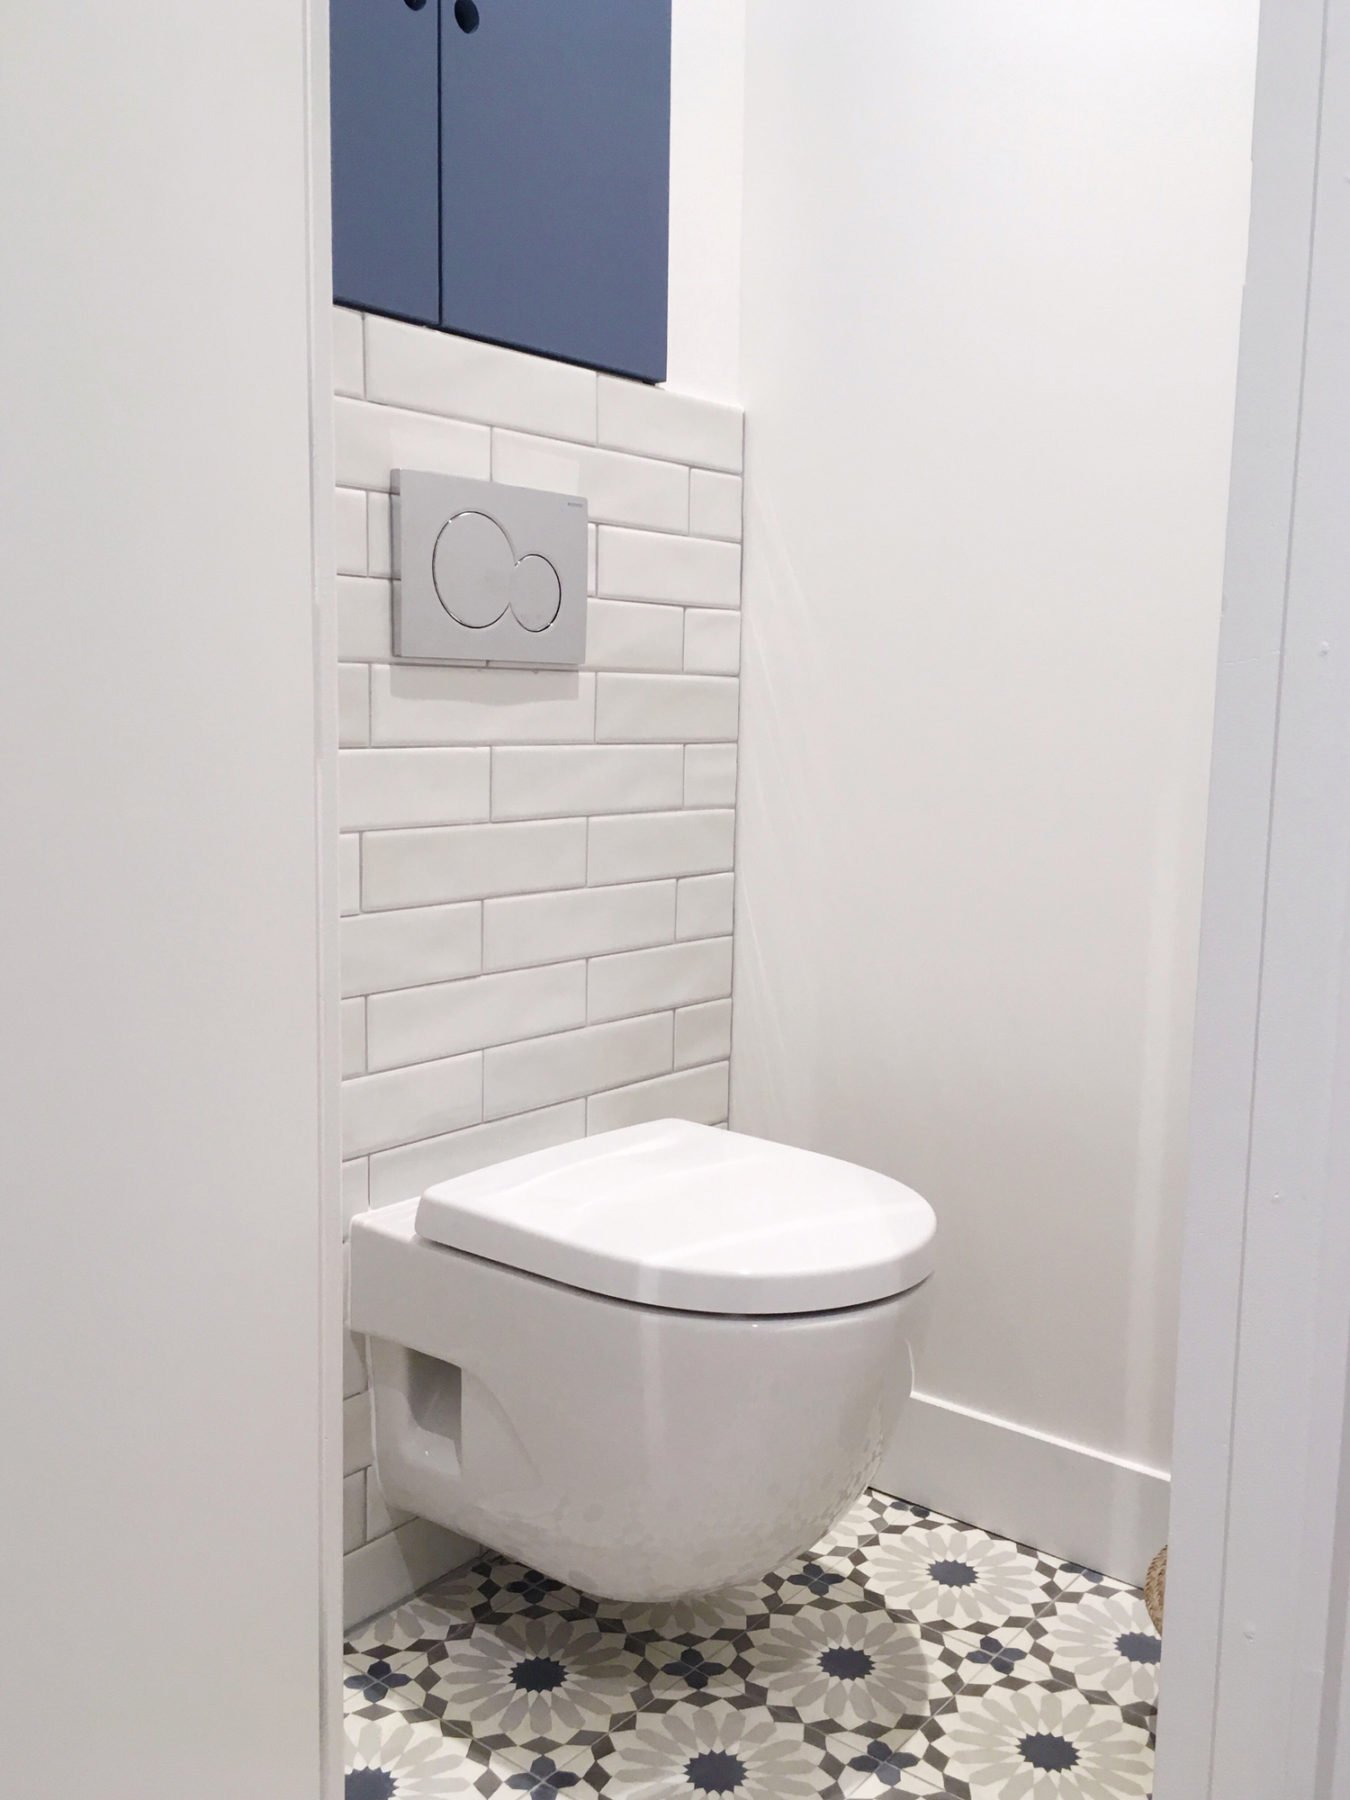 Anouck Charbonnier - Personnalisation et décoration d'une salle de bain pour le projet Henry Bordeaux à Annecy